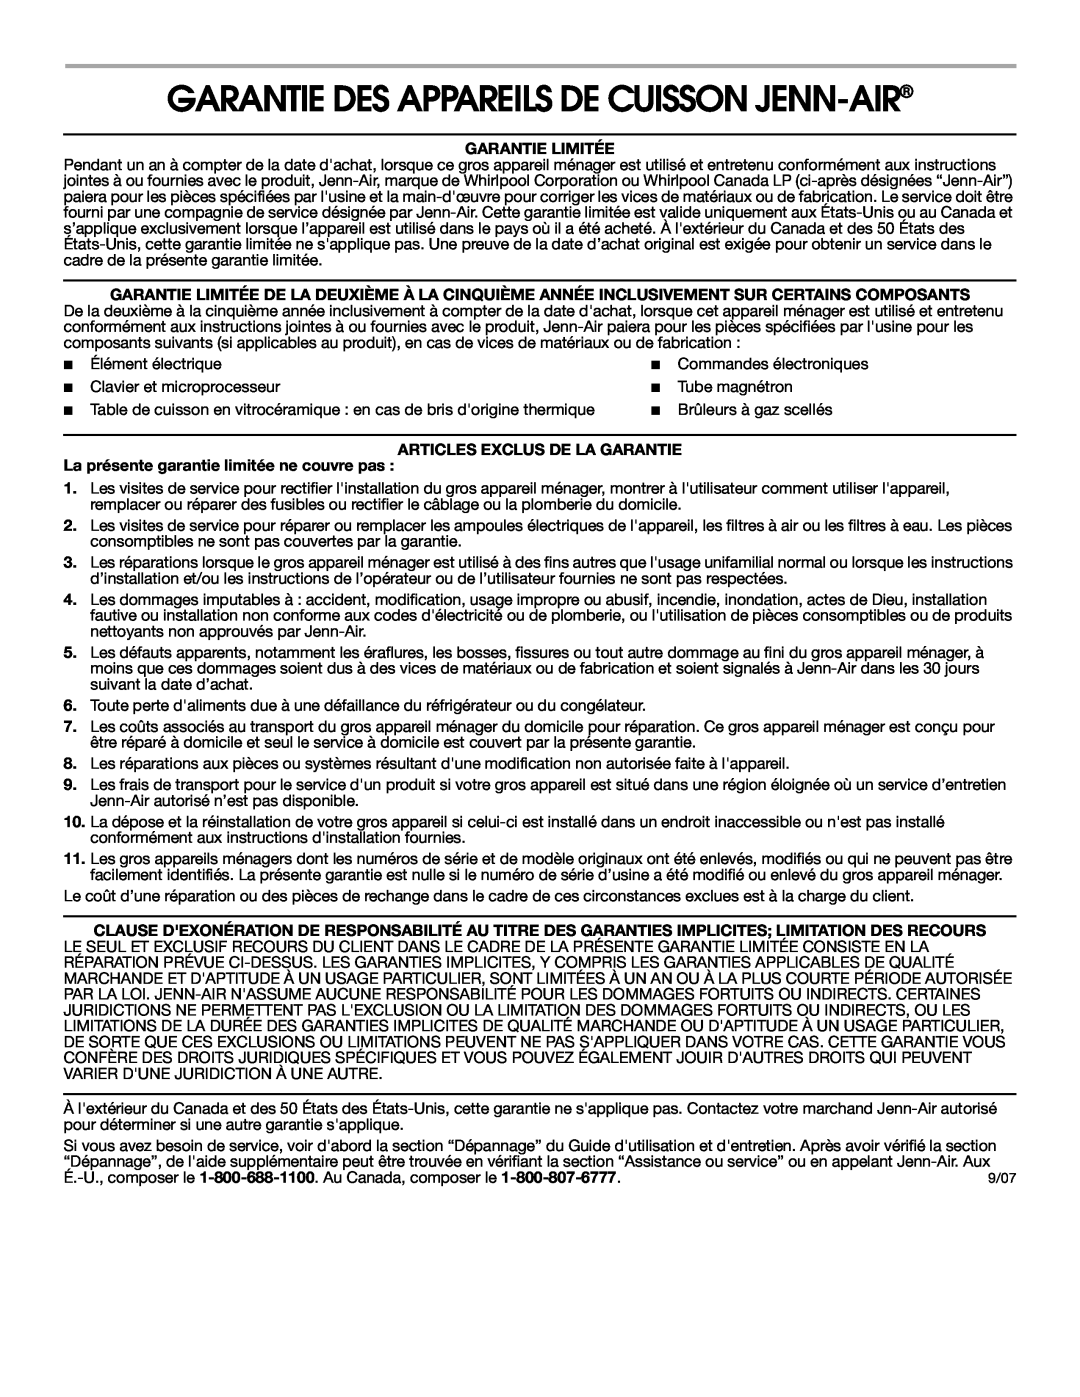 Jenn-Air 8112P342-60 Garantie Des Appareils De Cuisson Jenn-Air, Garantie Limitée, Articles Exclus De La Garantie 